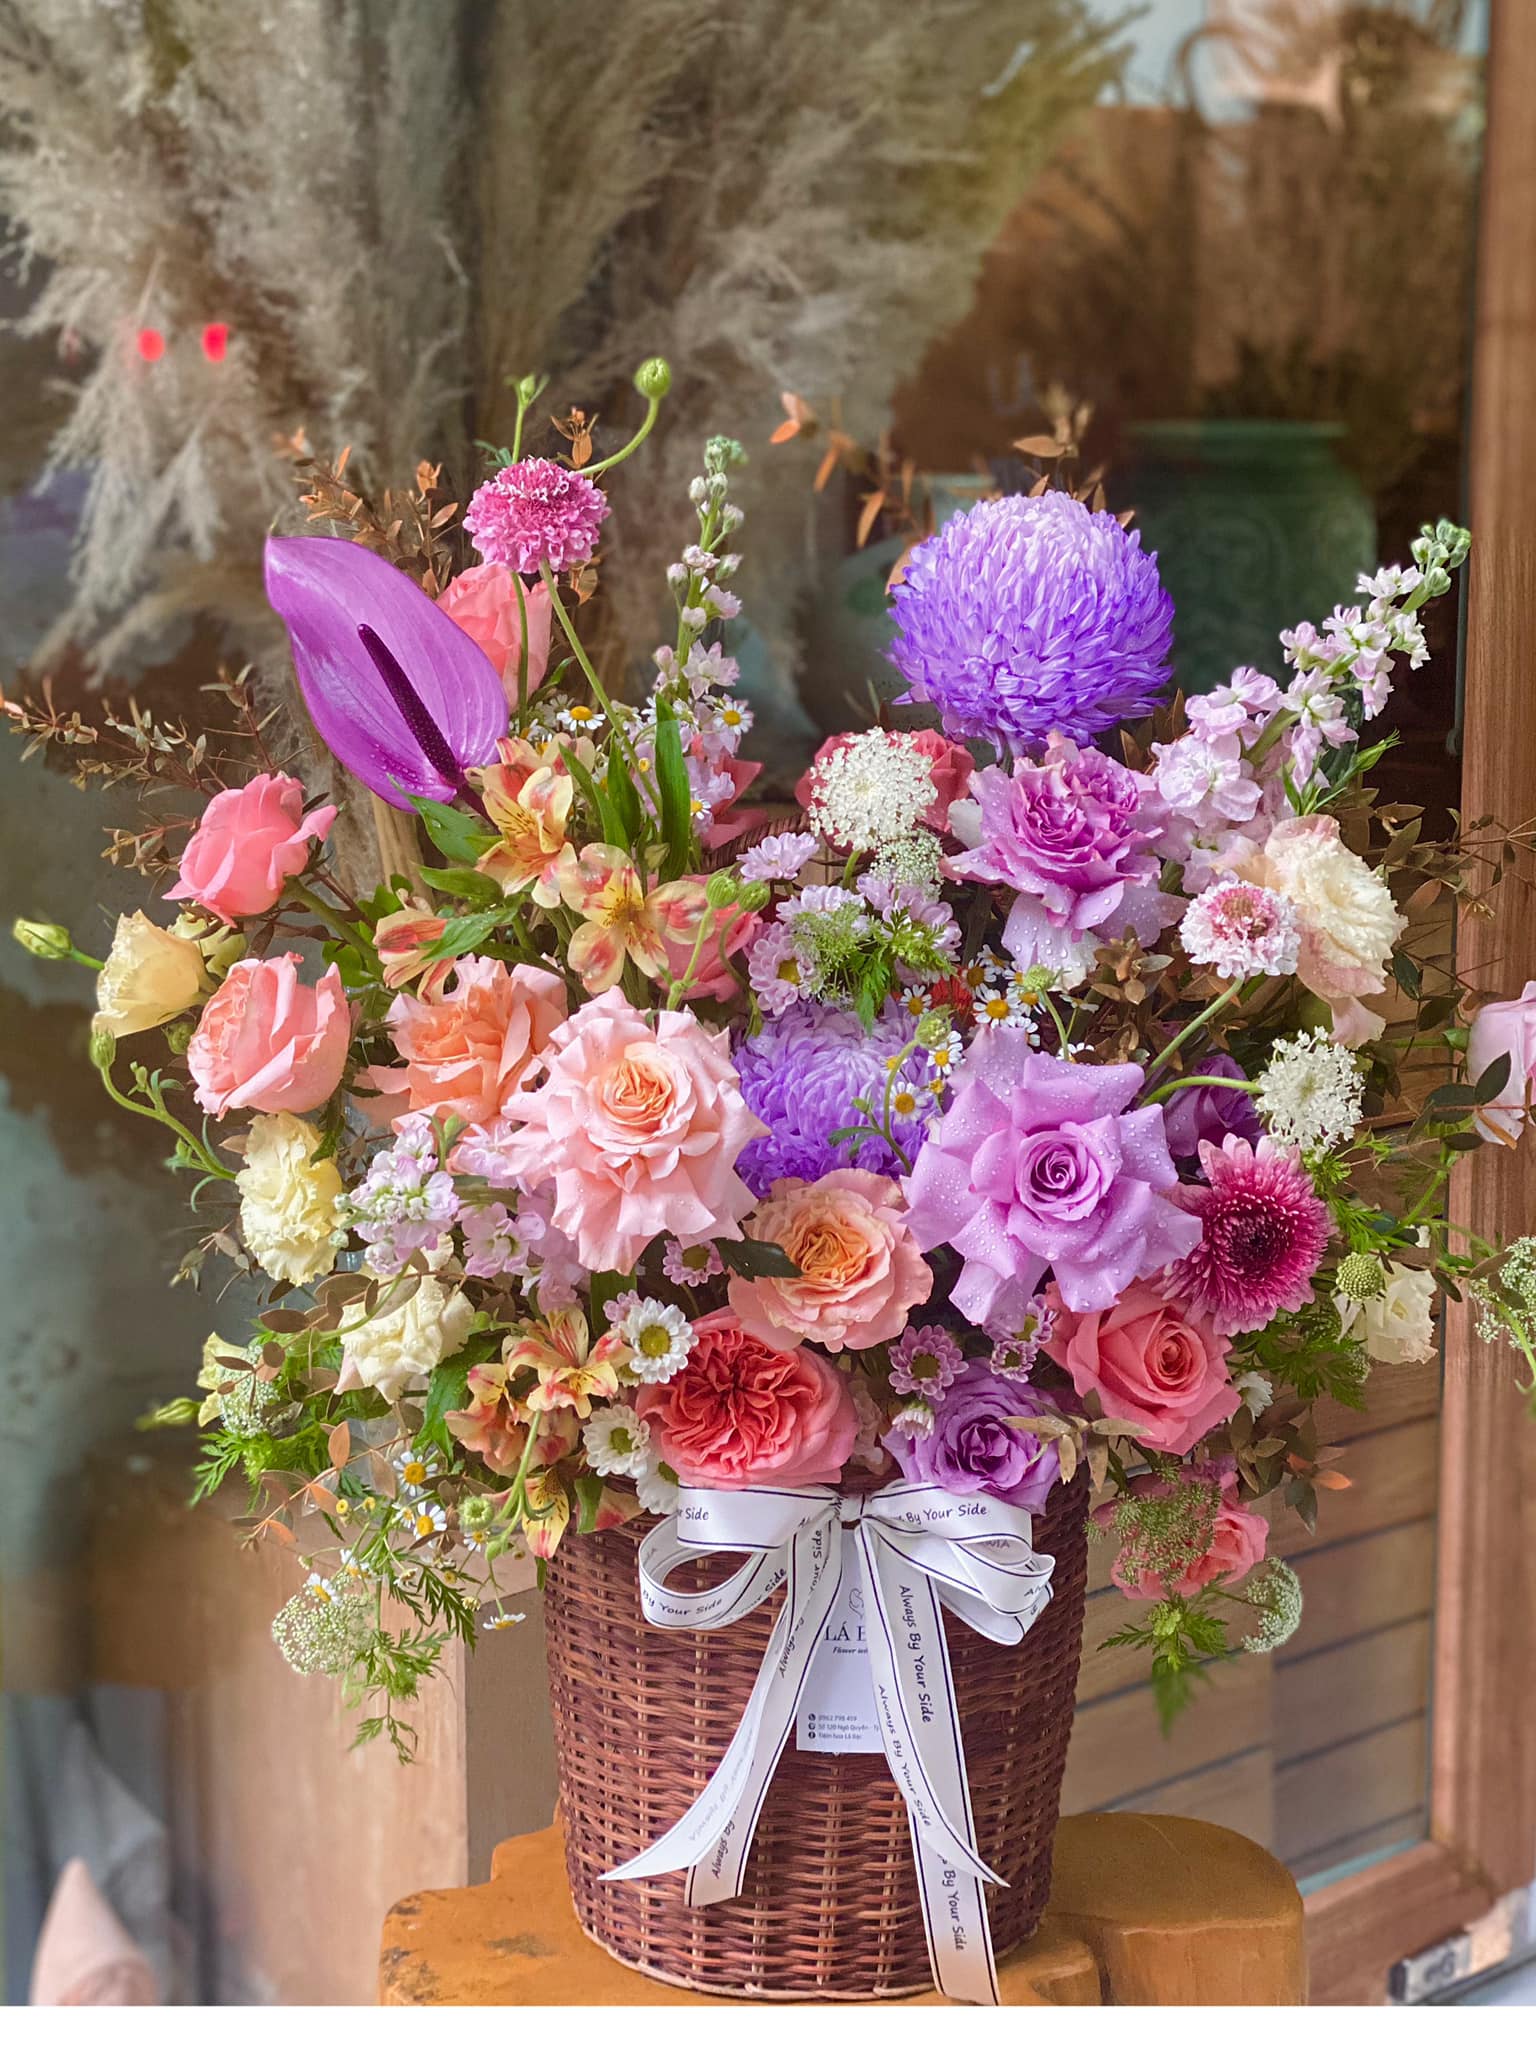 Shop Hoa Lá Bạc - Shop hoa tươi Hải Dương được nhiều khách hàng tin tưởng 